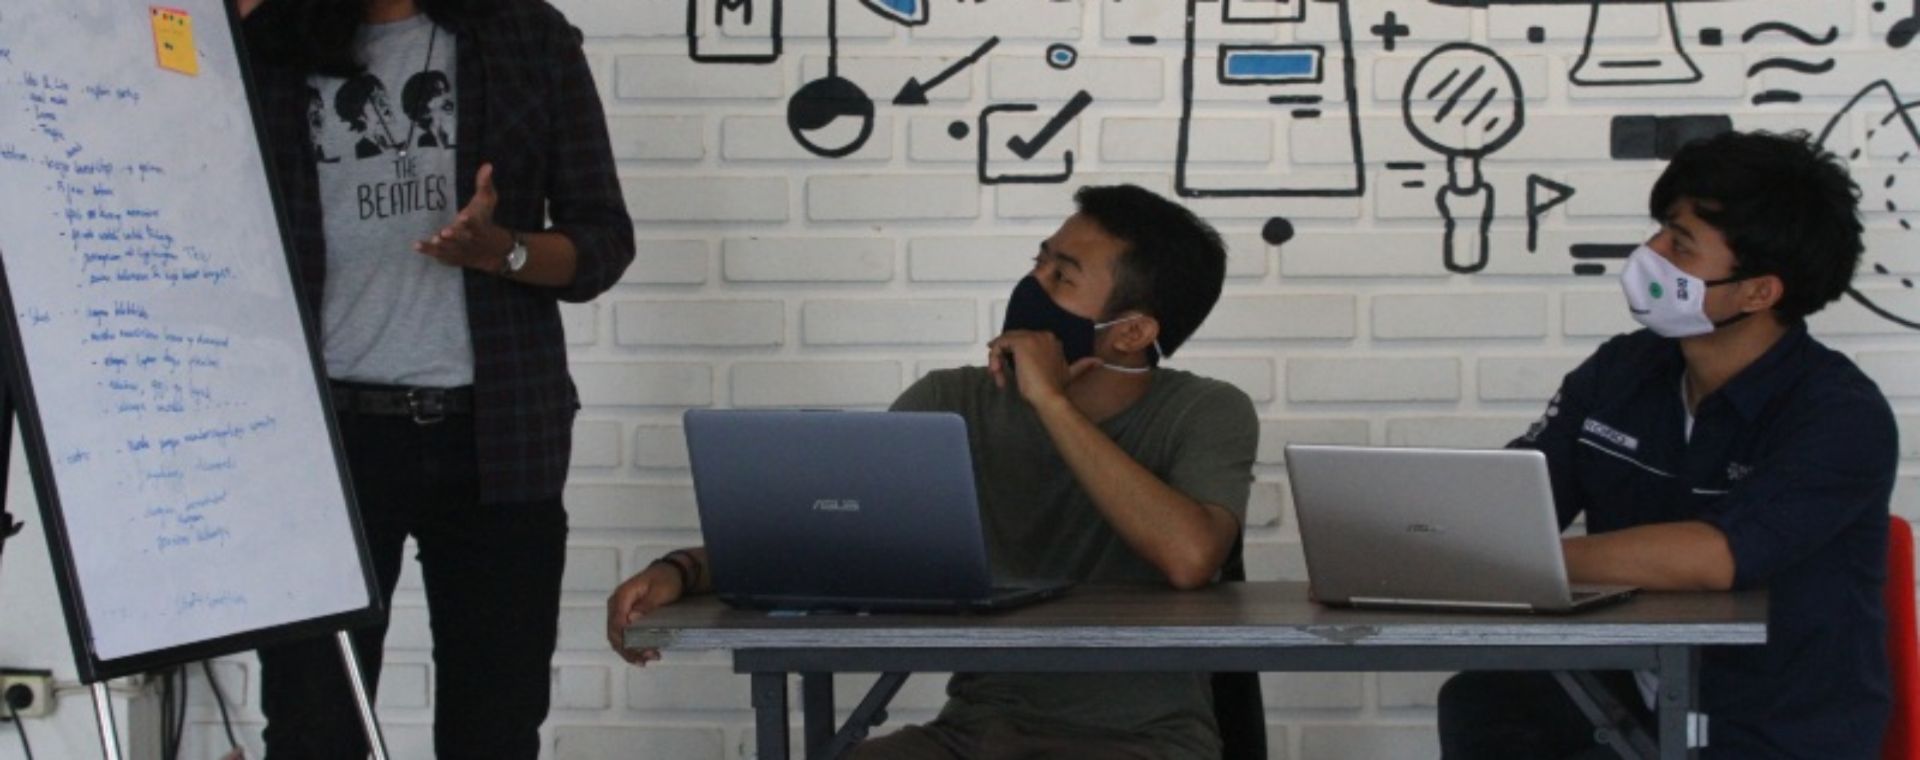 Pengelola perusahaan rintisan digital atau startup mengoperasikan program pelayanan di sebuah kantor bersama berbasis jaringan internet (Coworking space) Ngalup.Co di Malang, Jawa Timur, Senin (12/10/2020).  - ANTARA FOTO/Ari Bowo Sucipto